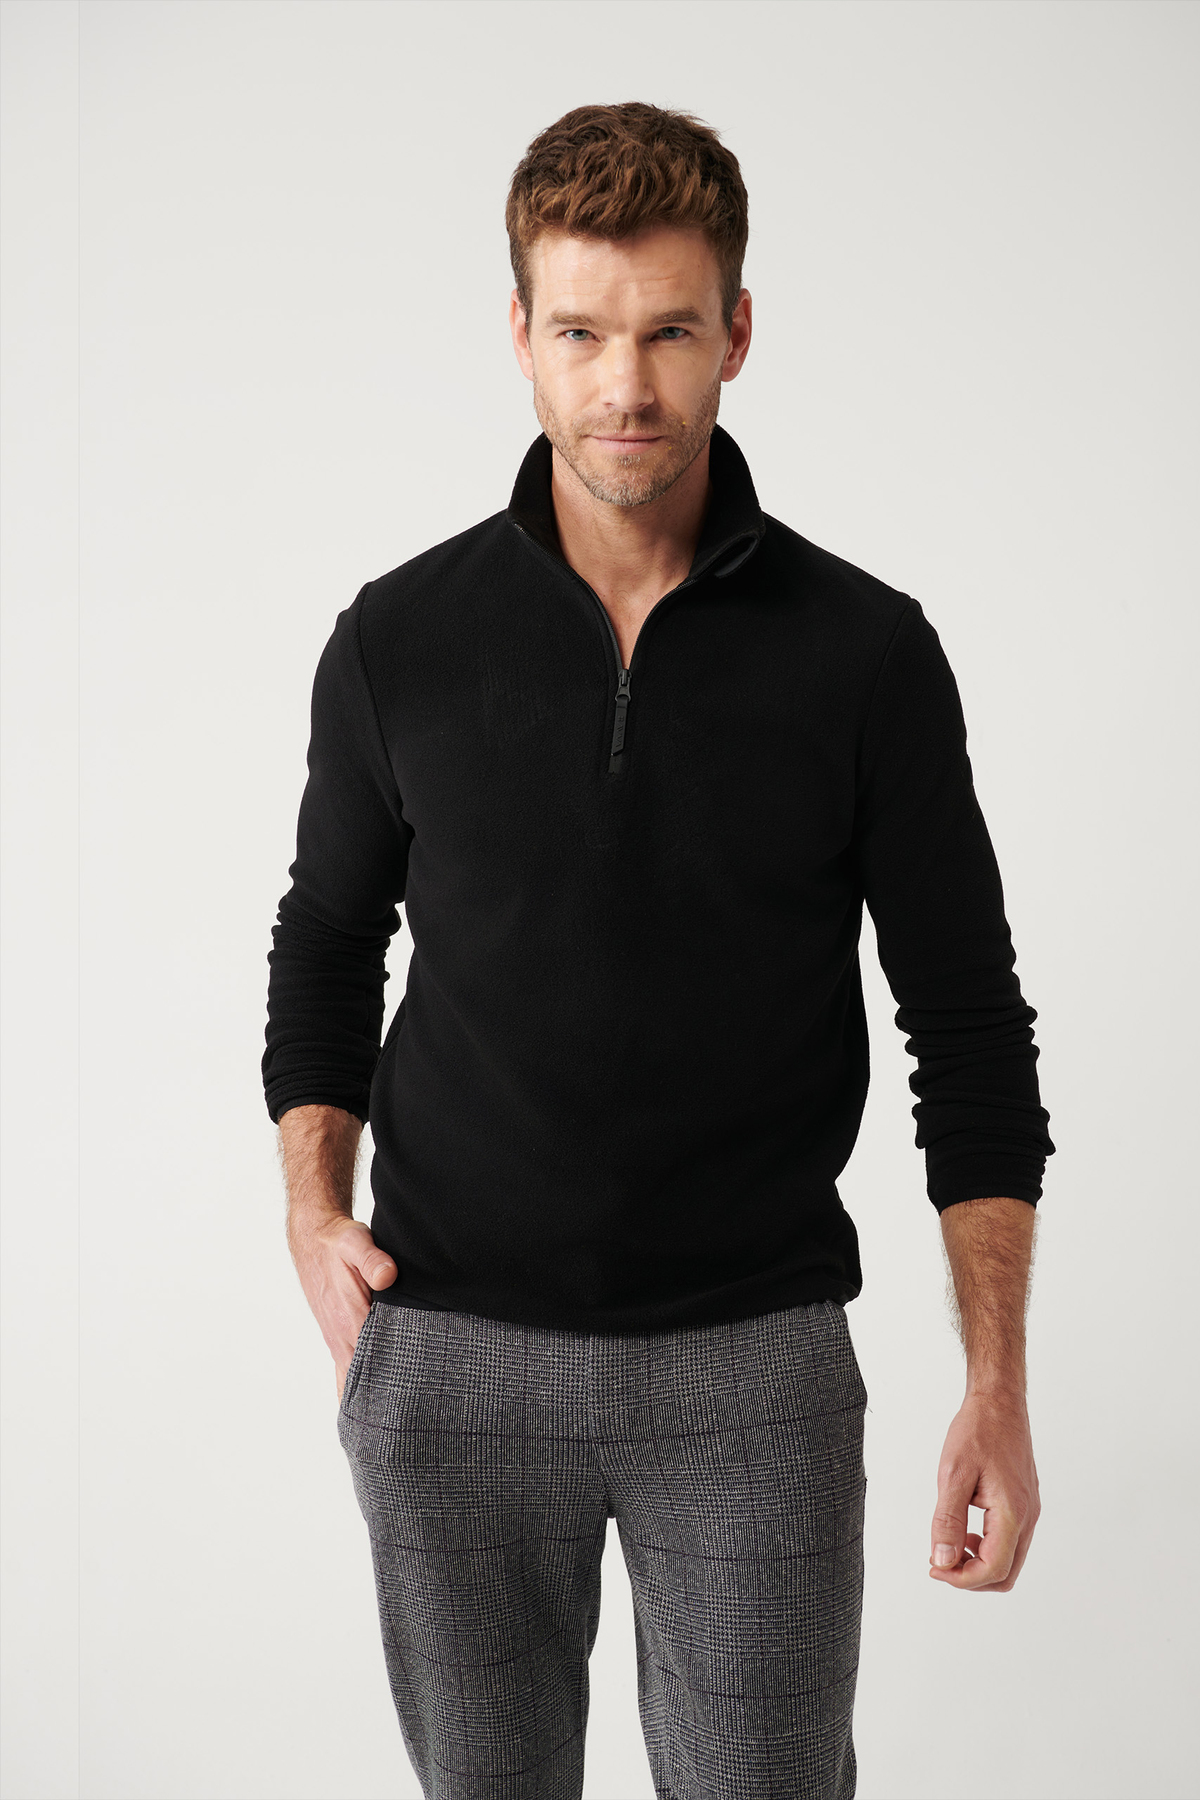 Avva Men's Black Fleece Sweatshirt Stand Collar Cold Resistant Half Zipper Regular Fit